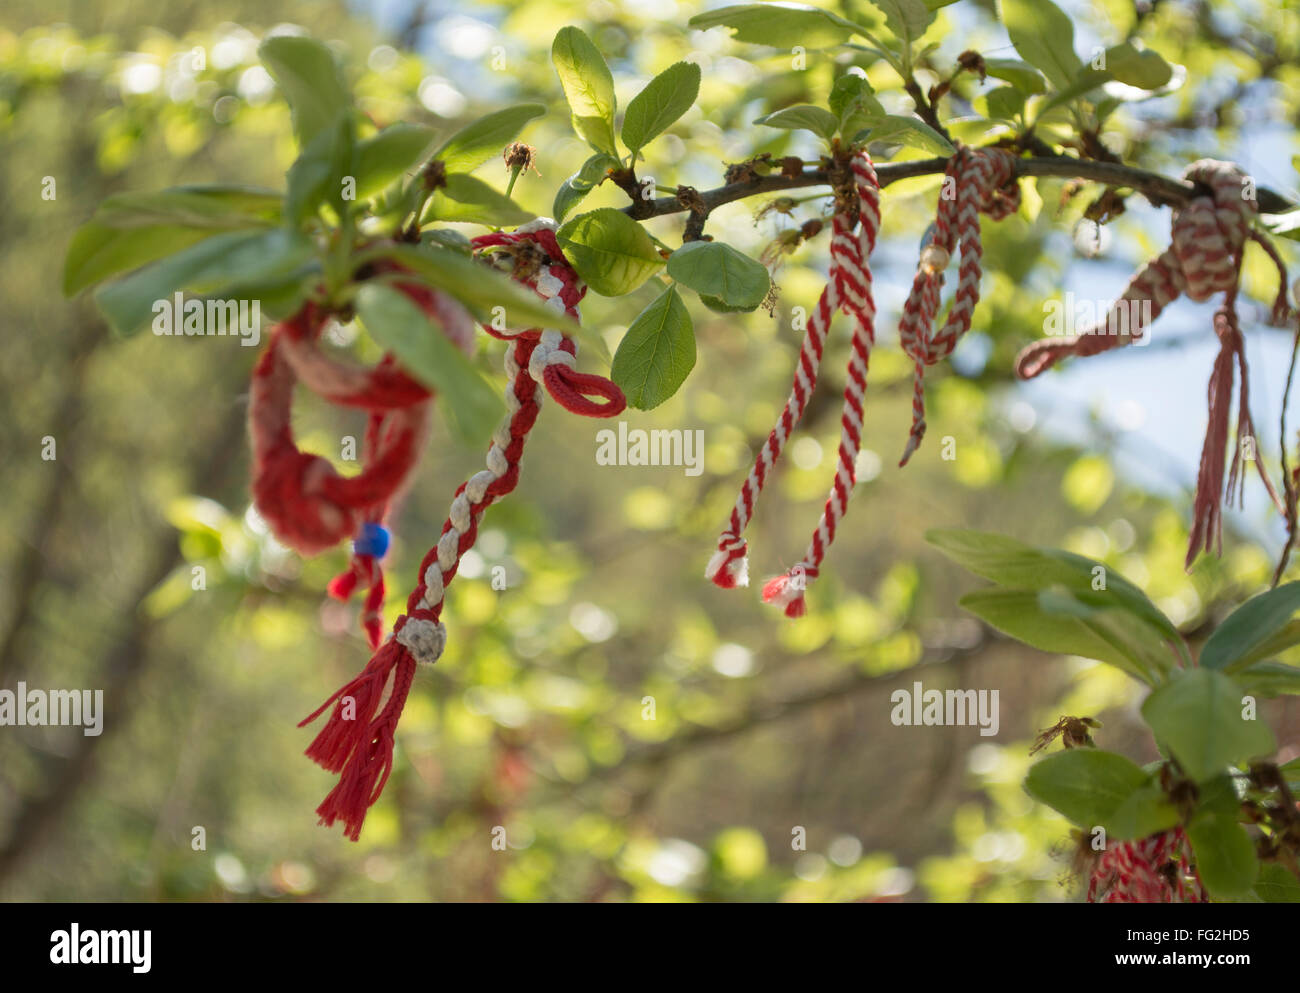 Marteniza, kleinen rot-weißen Verzierungen Garn hergestellt. Getragen, um Frühling in Bulgarien begrüßen zu dürfen. Stockfoto